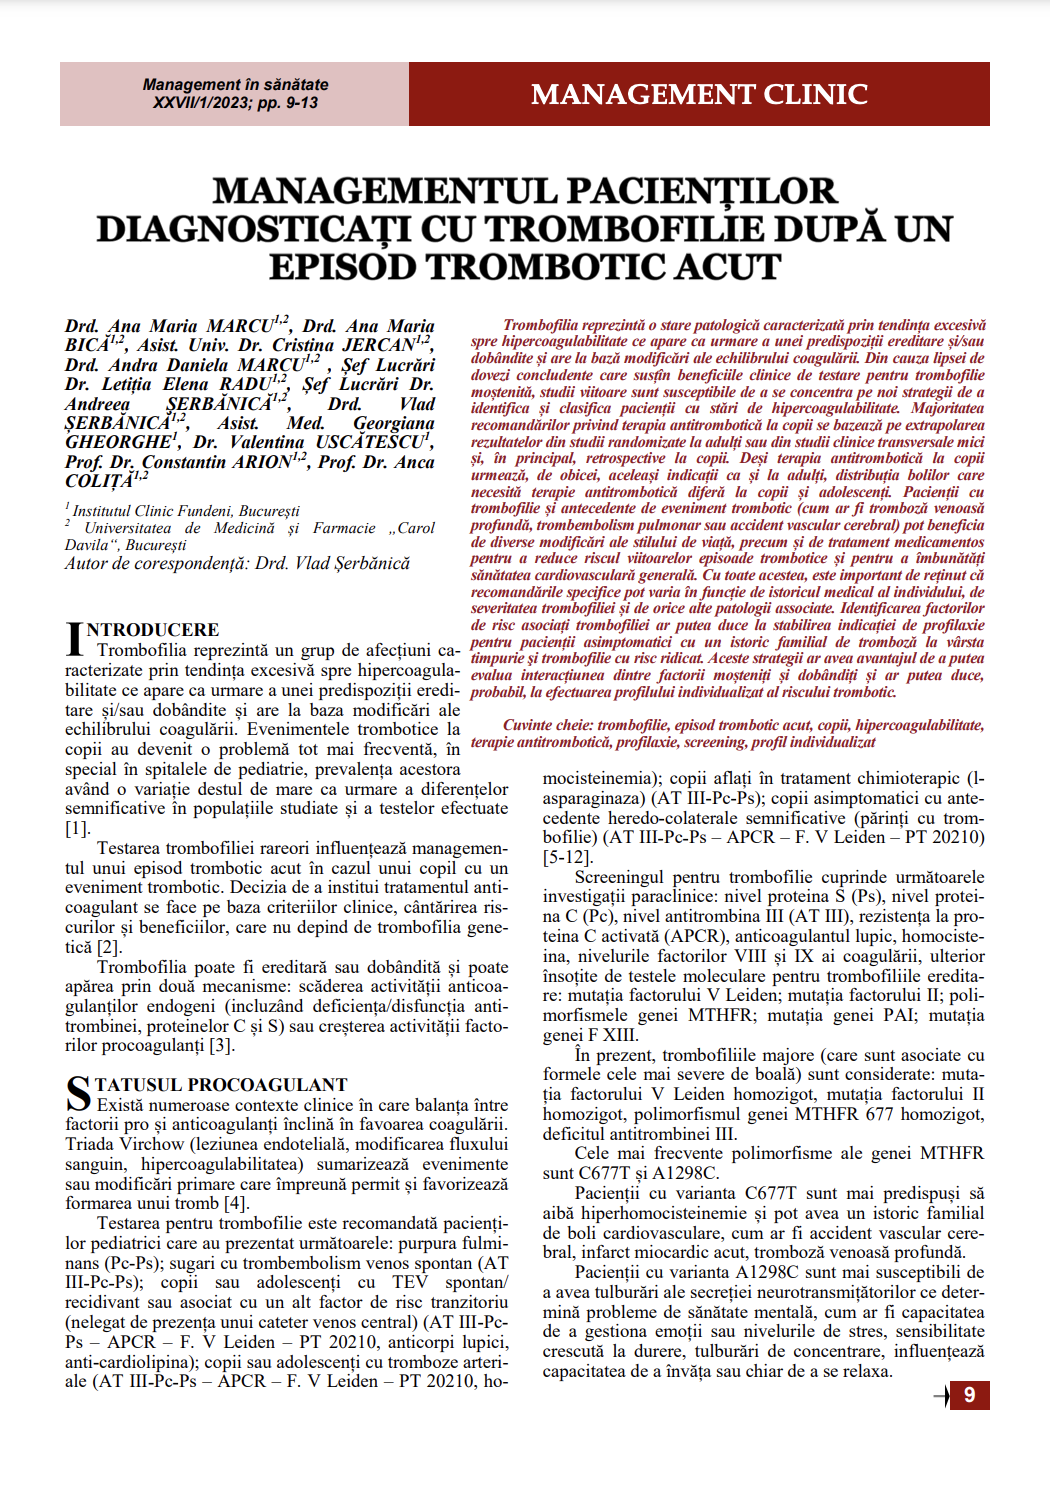 Managementul pacienților diagnosticați cu trombofilie după un episod trombotic acut